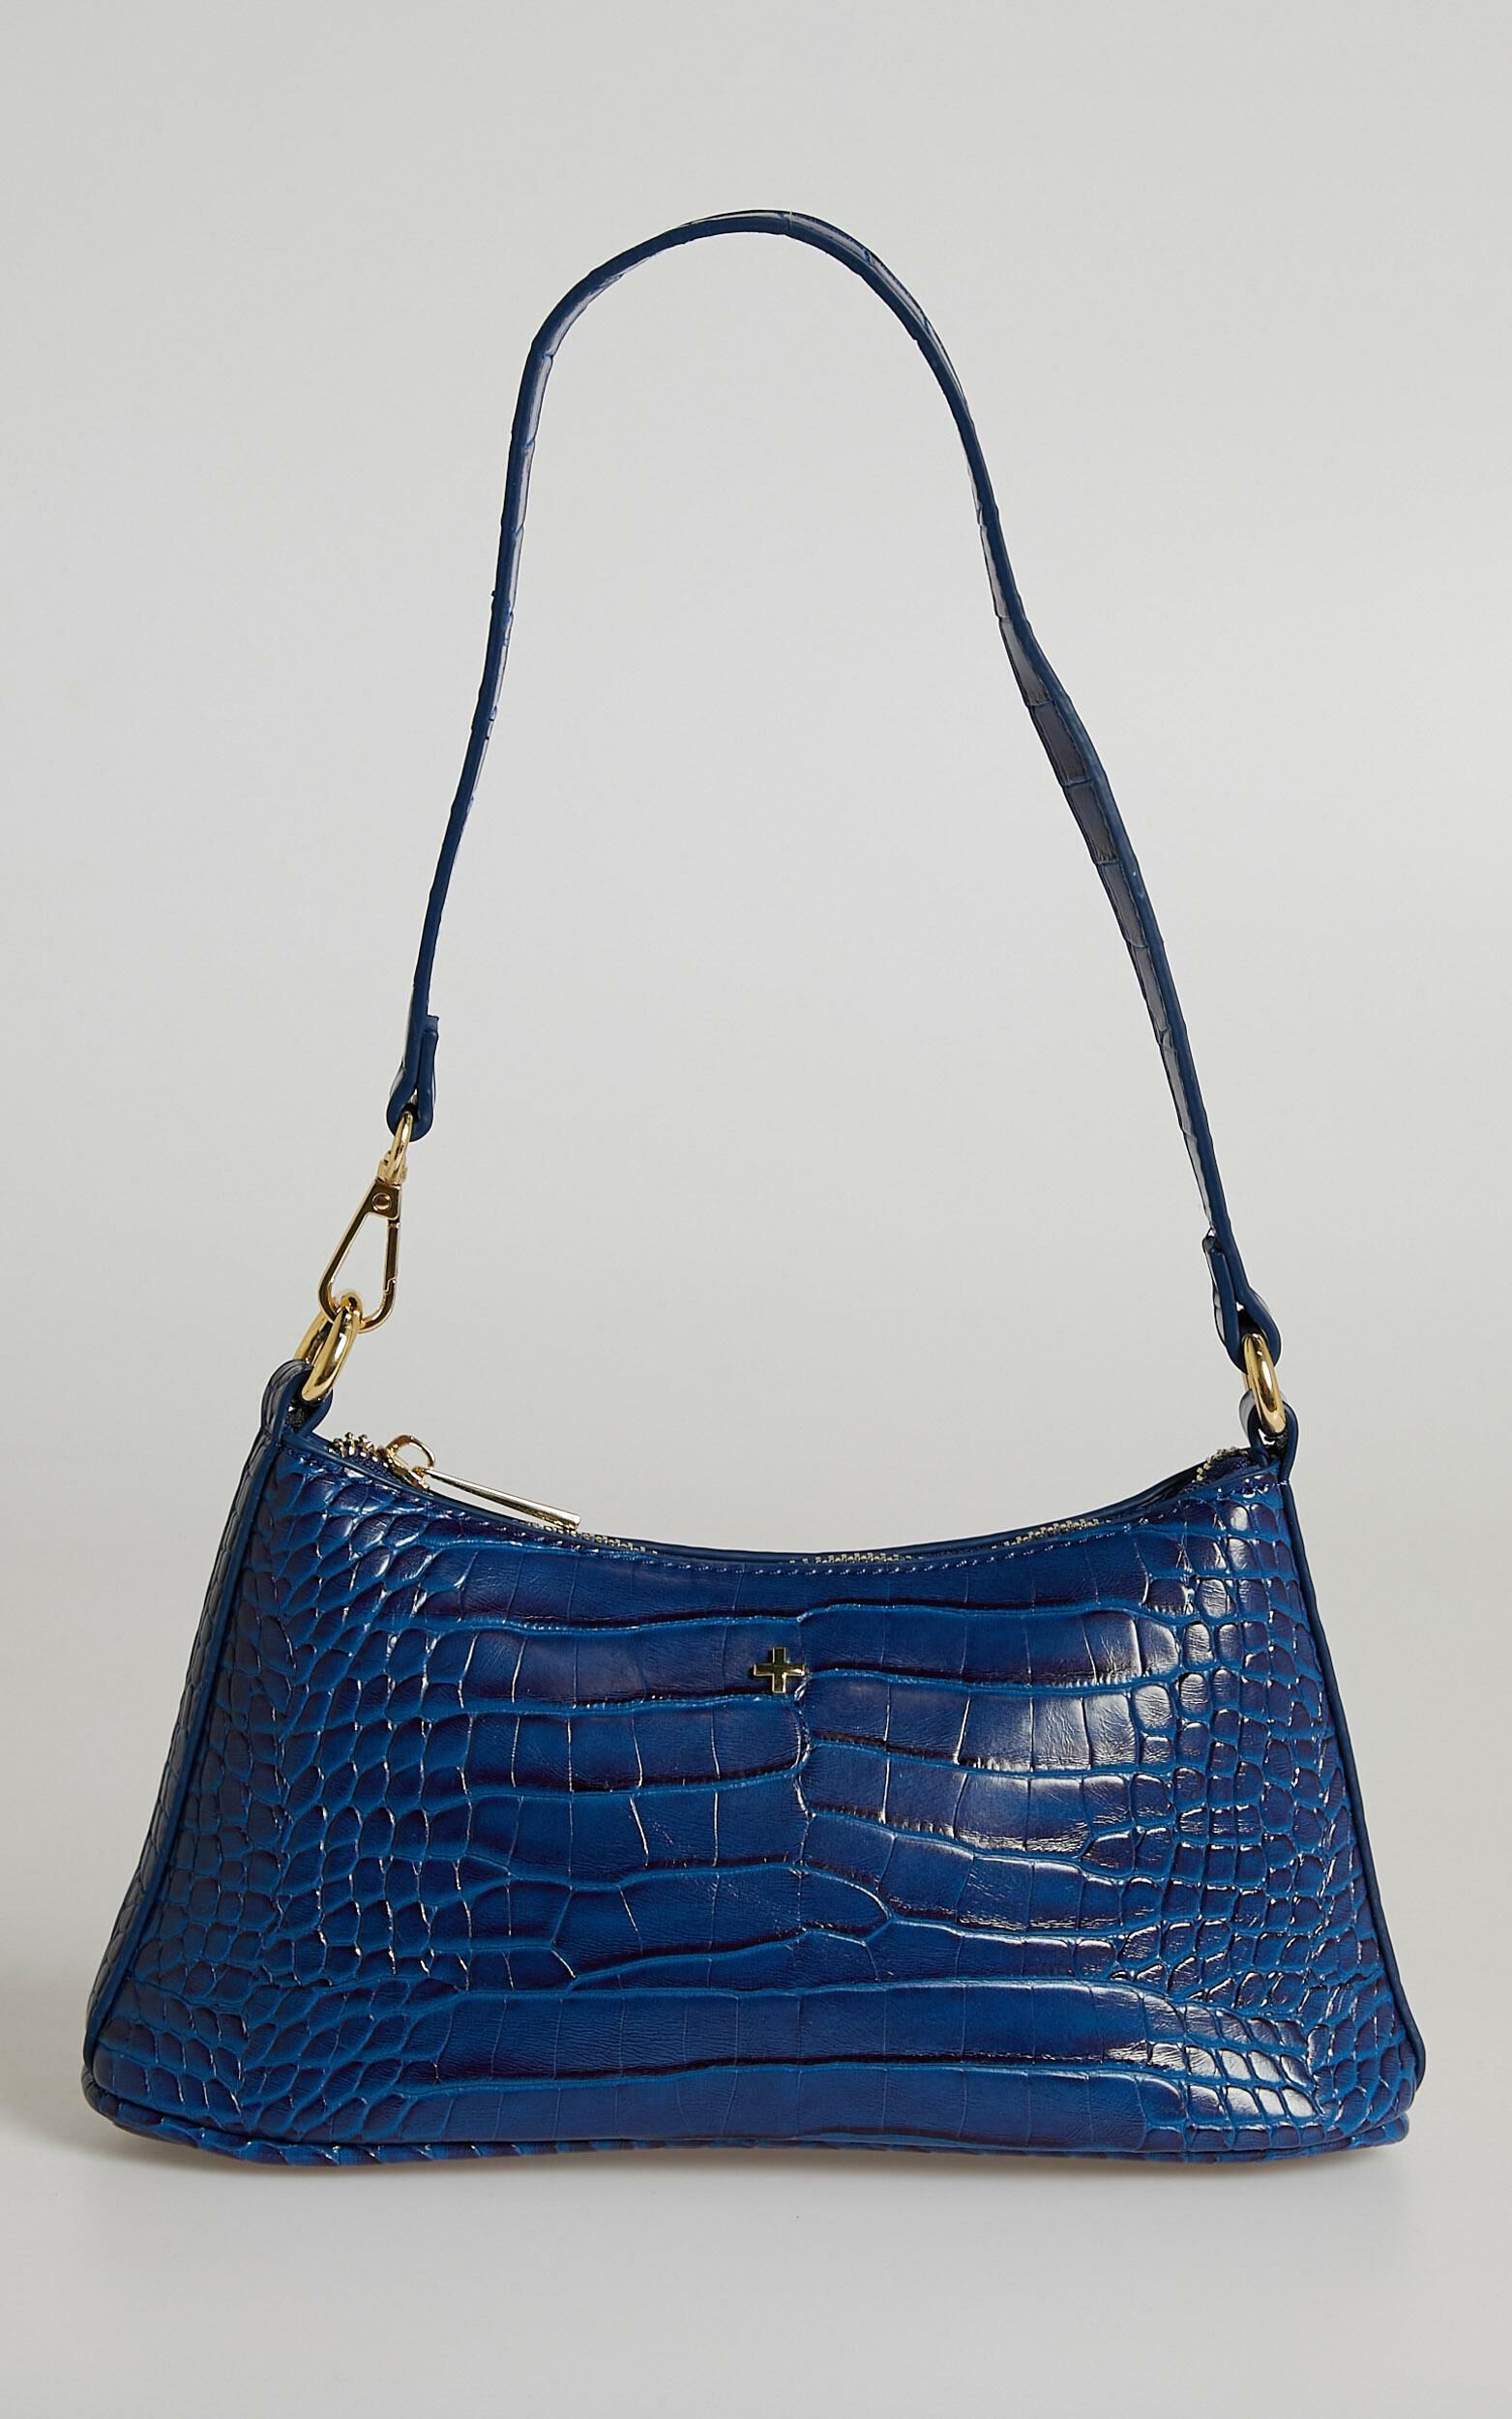 Buy Shopo Faux Leather Woman Handbag Shoulder Hobo Bag Purse (Long